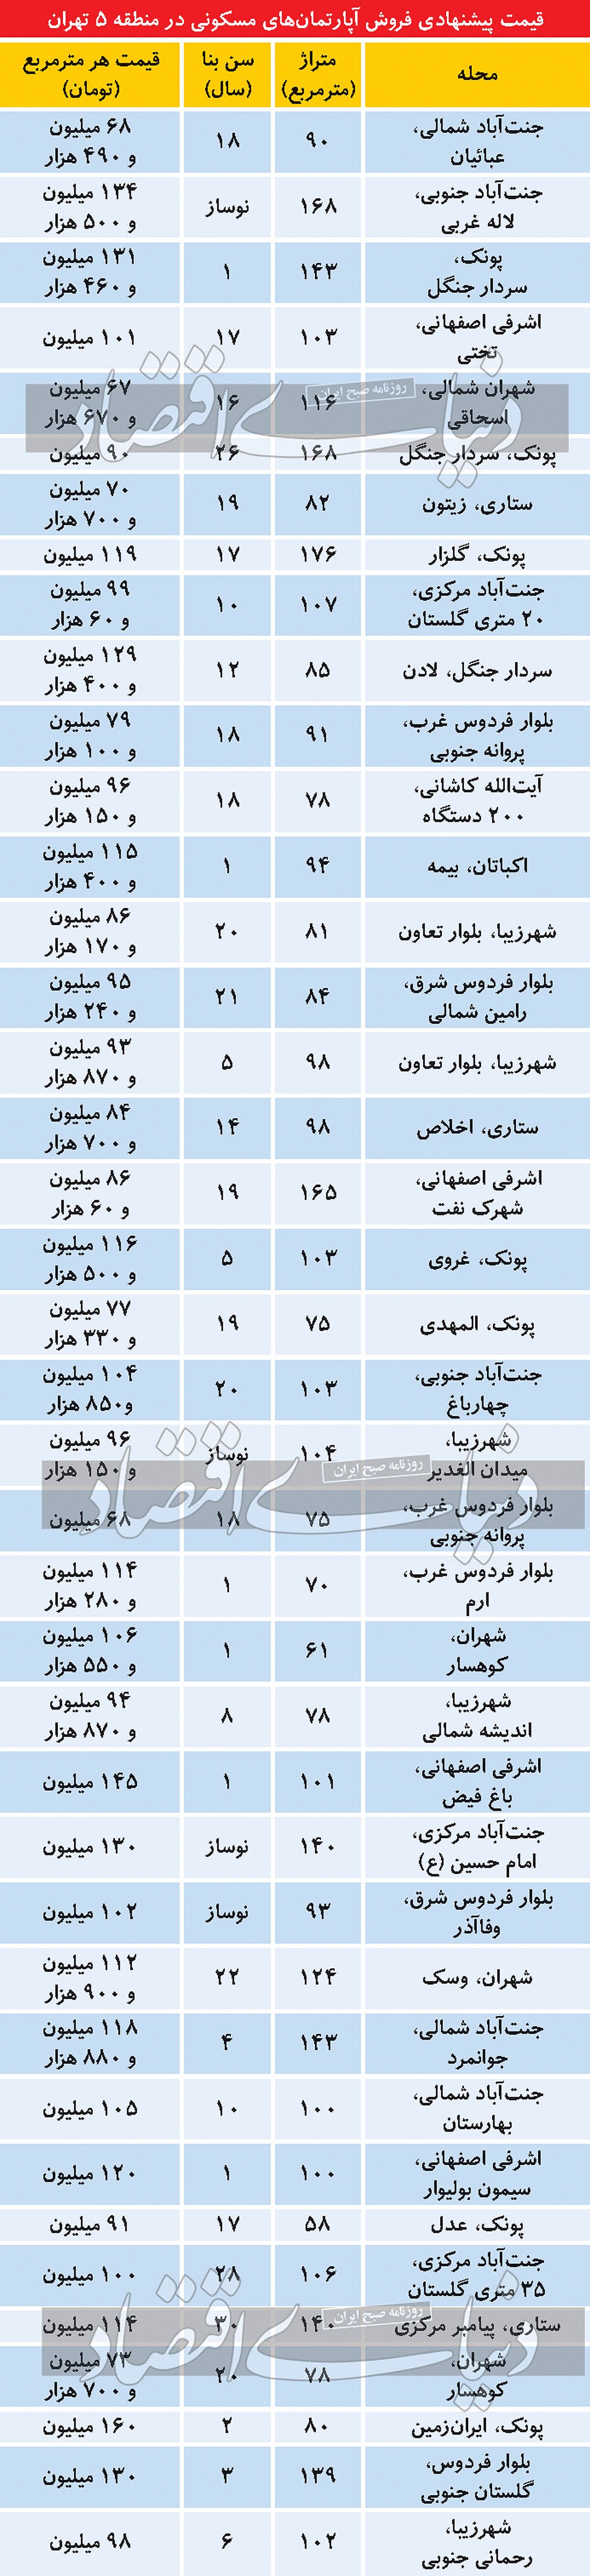 قیمت مسکن در منطقه 5 تهران/ جدول